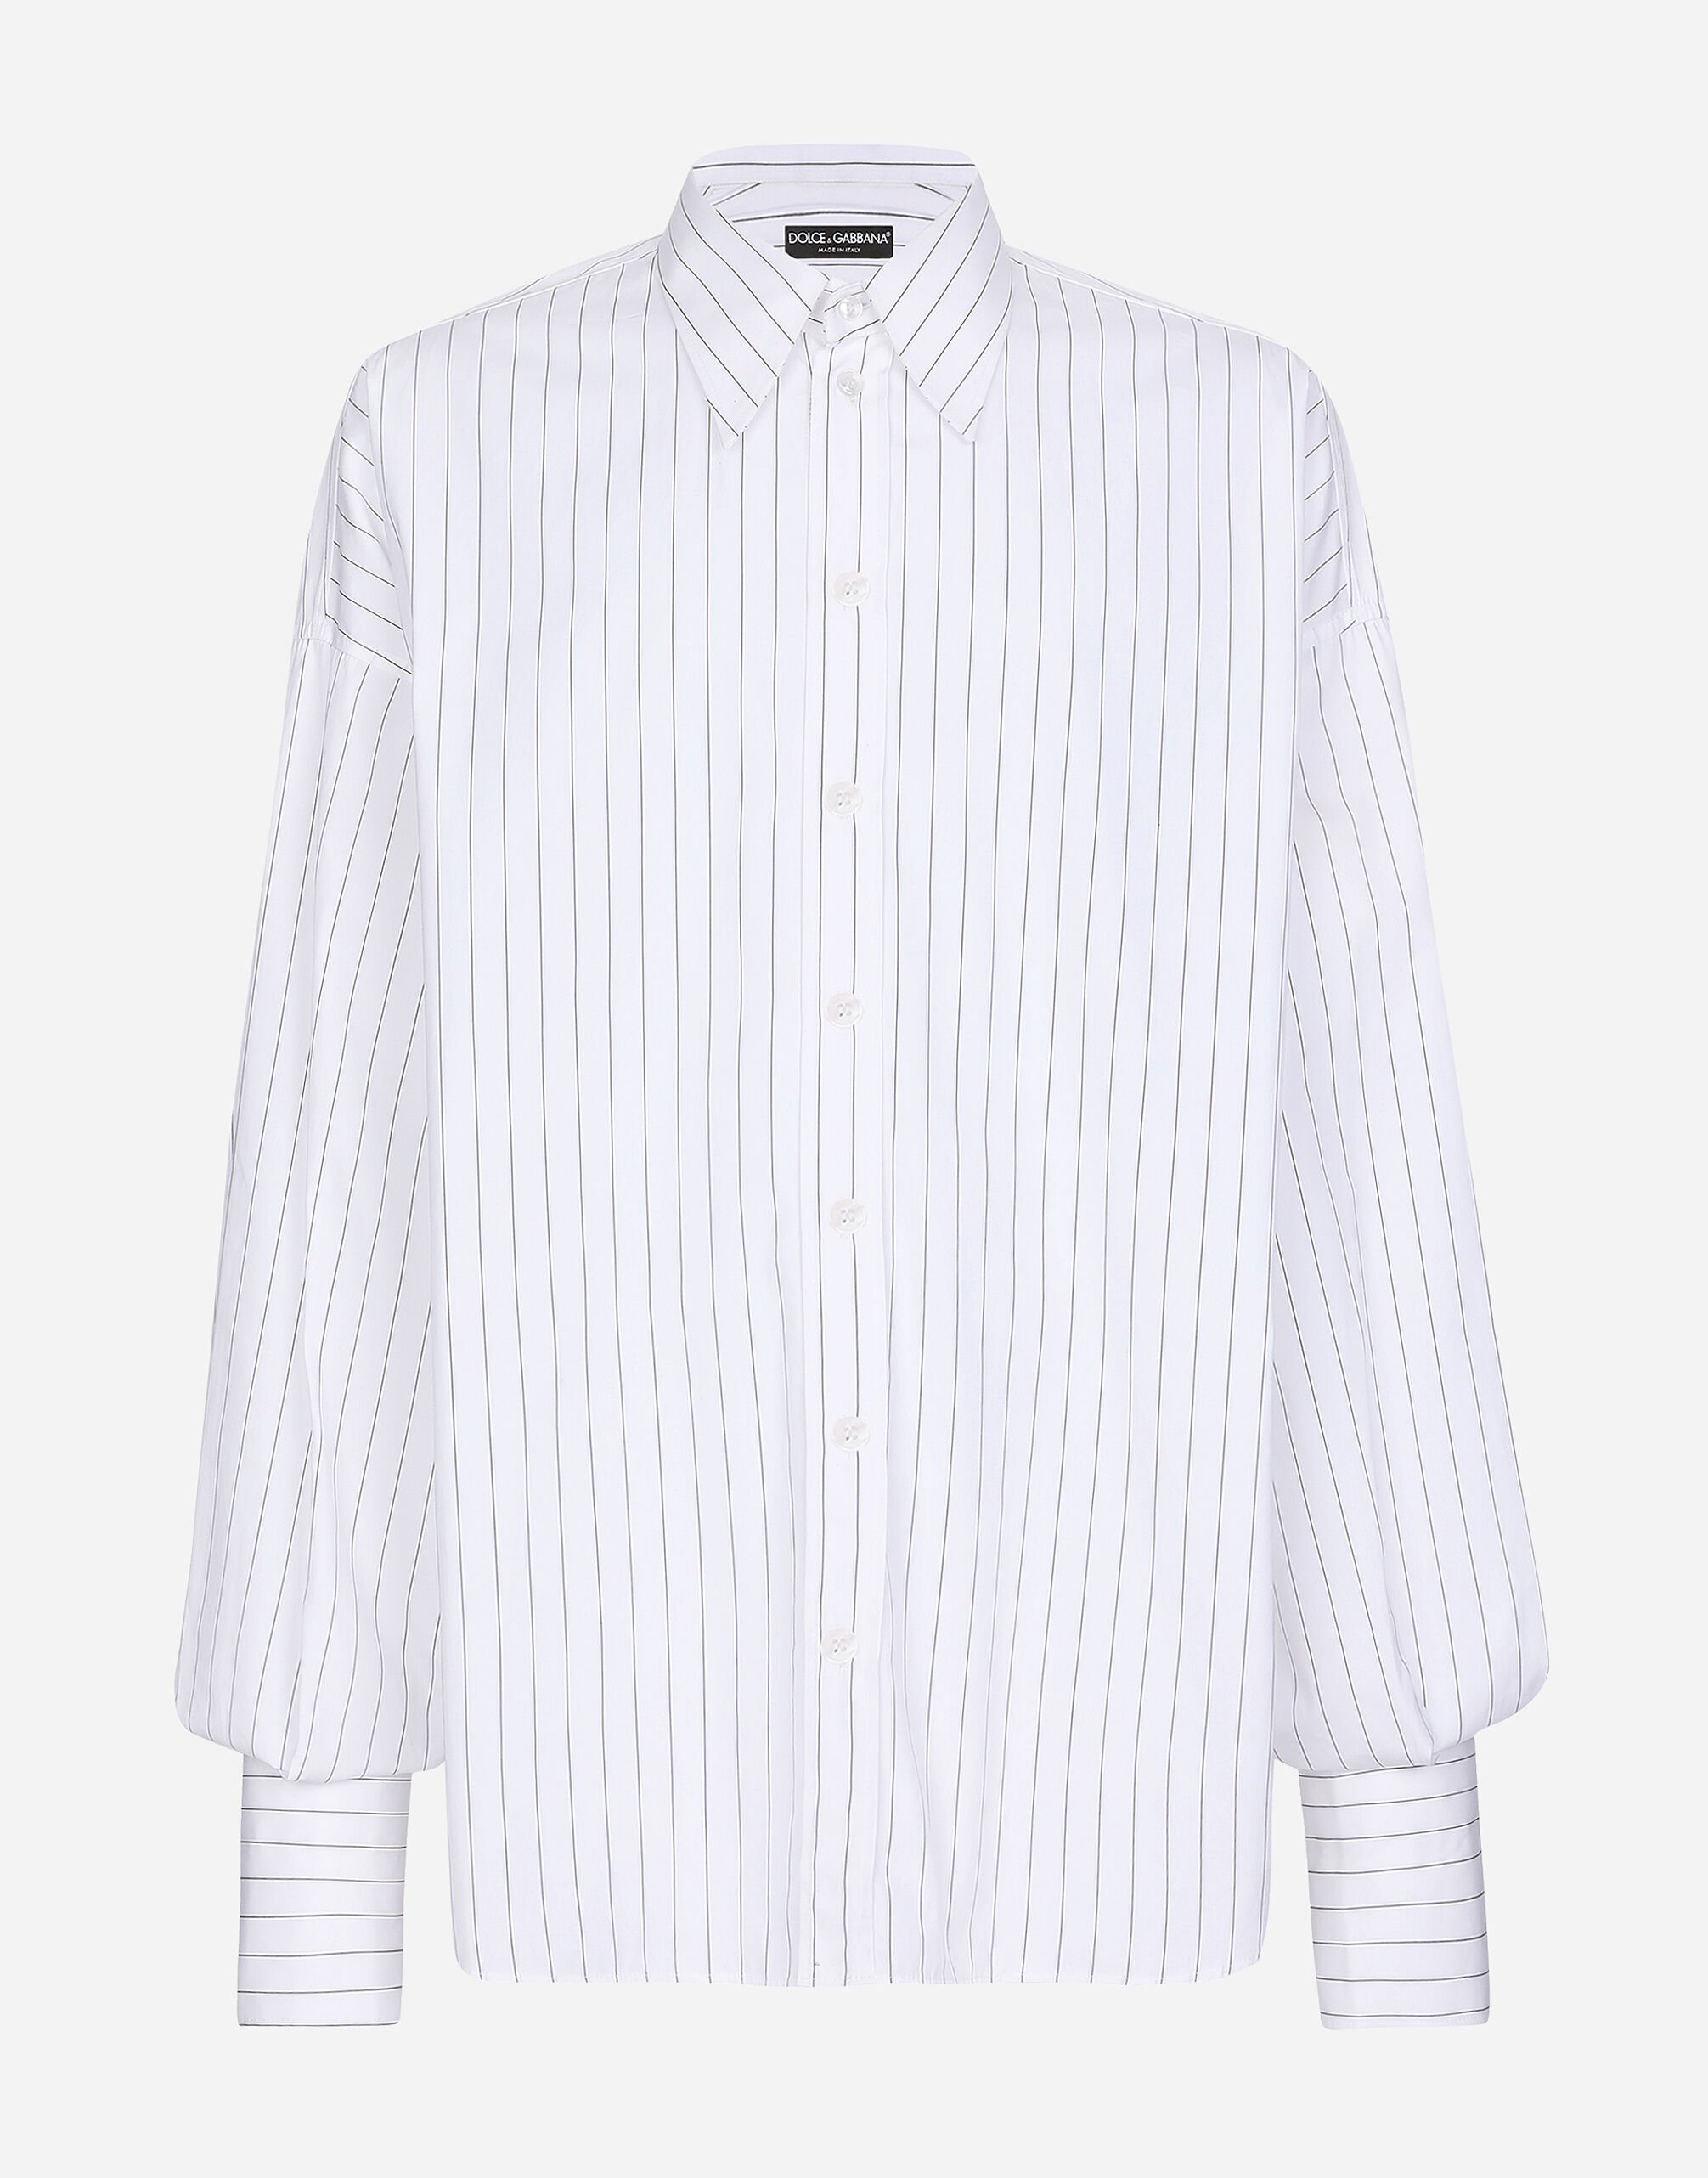 Dolce & Gabbana Super-oversize striped poplin shirt Brown G2SJ0THUMG4